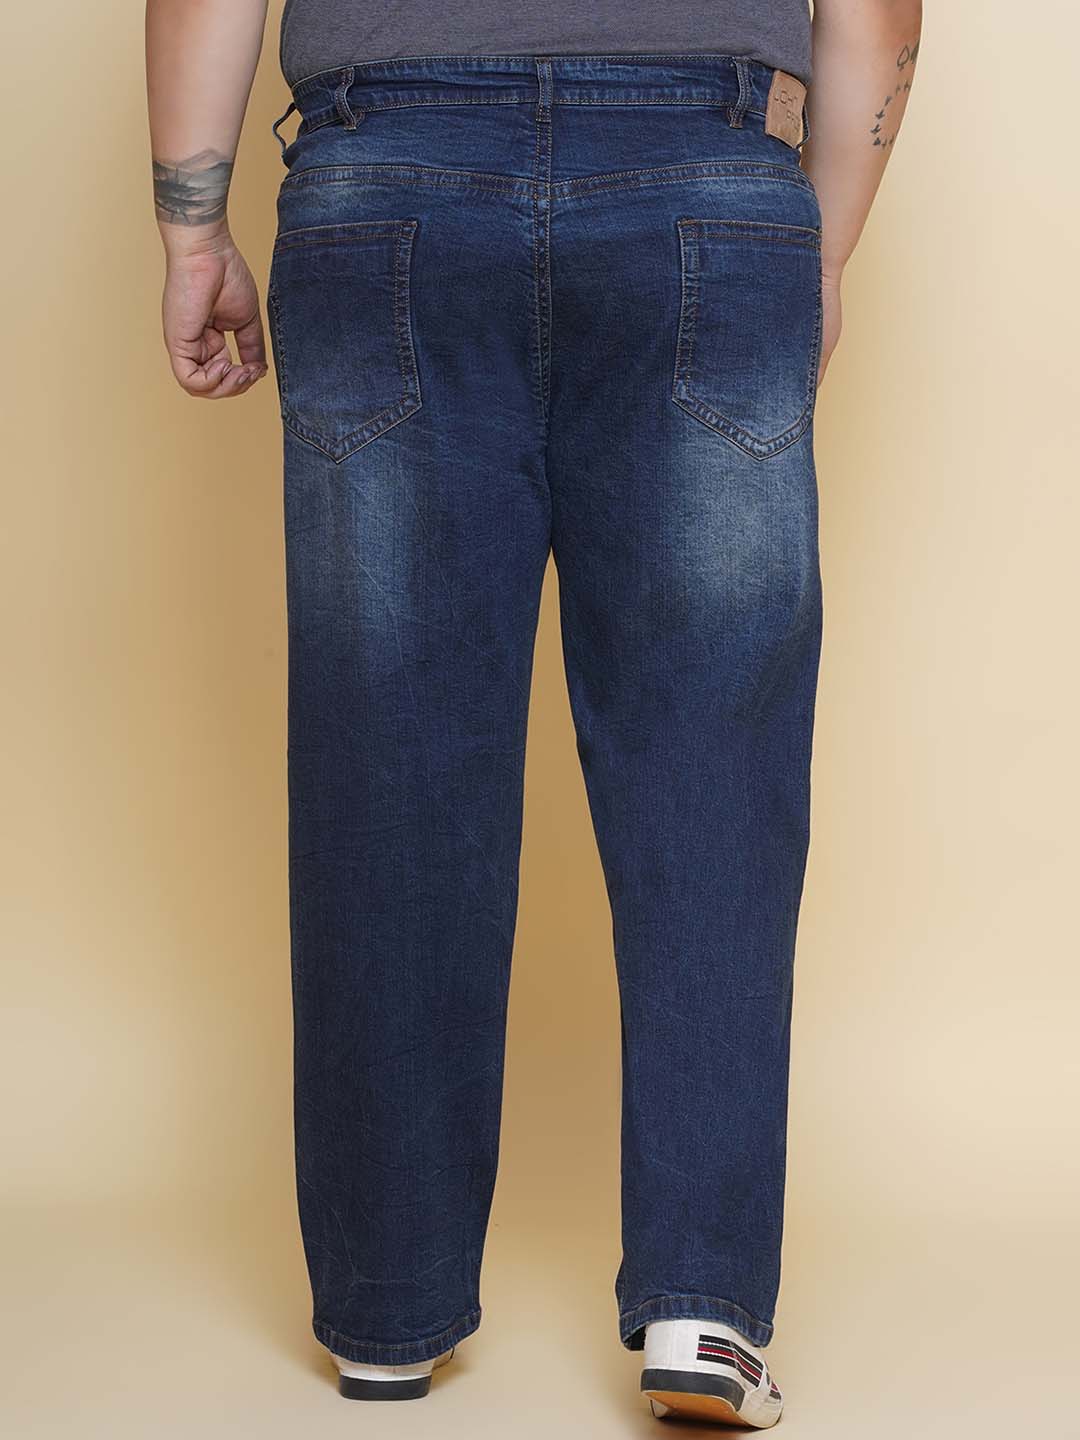 bottomwear/jeans/JPJ27096/jpj27096-5.jpg